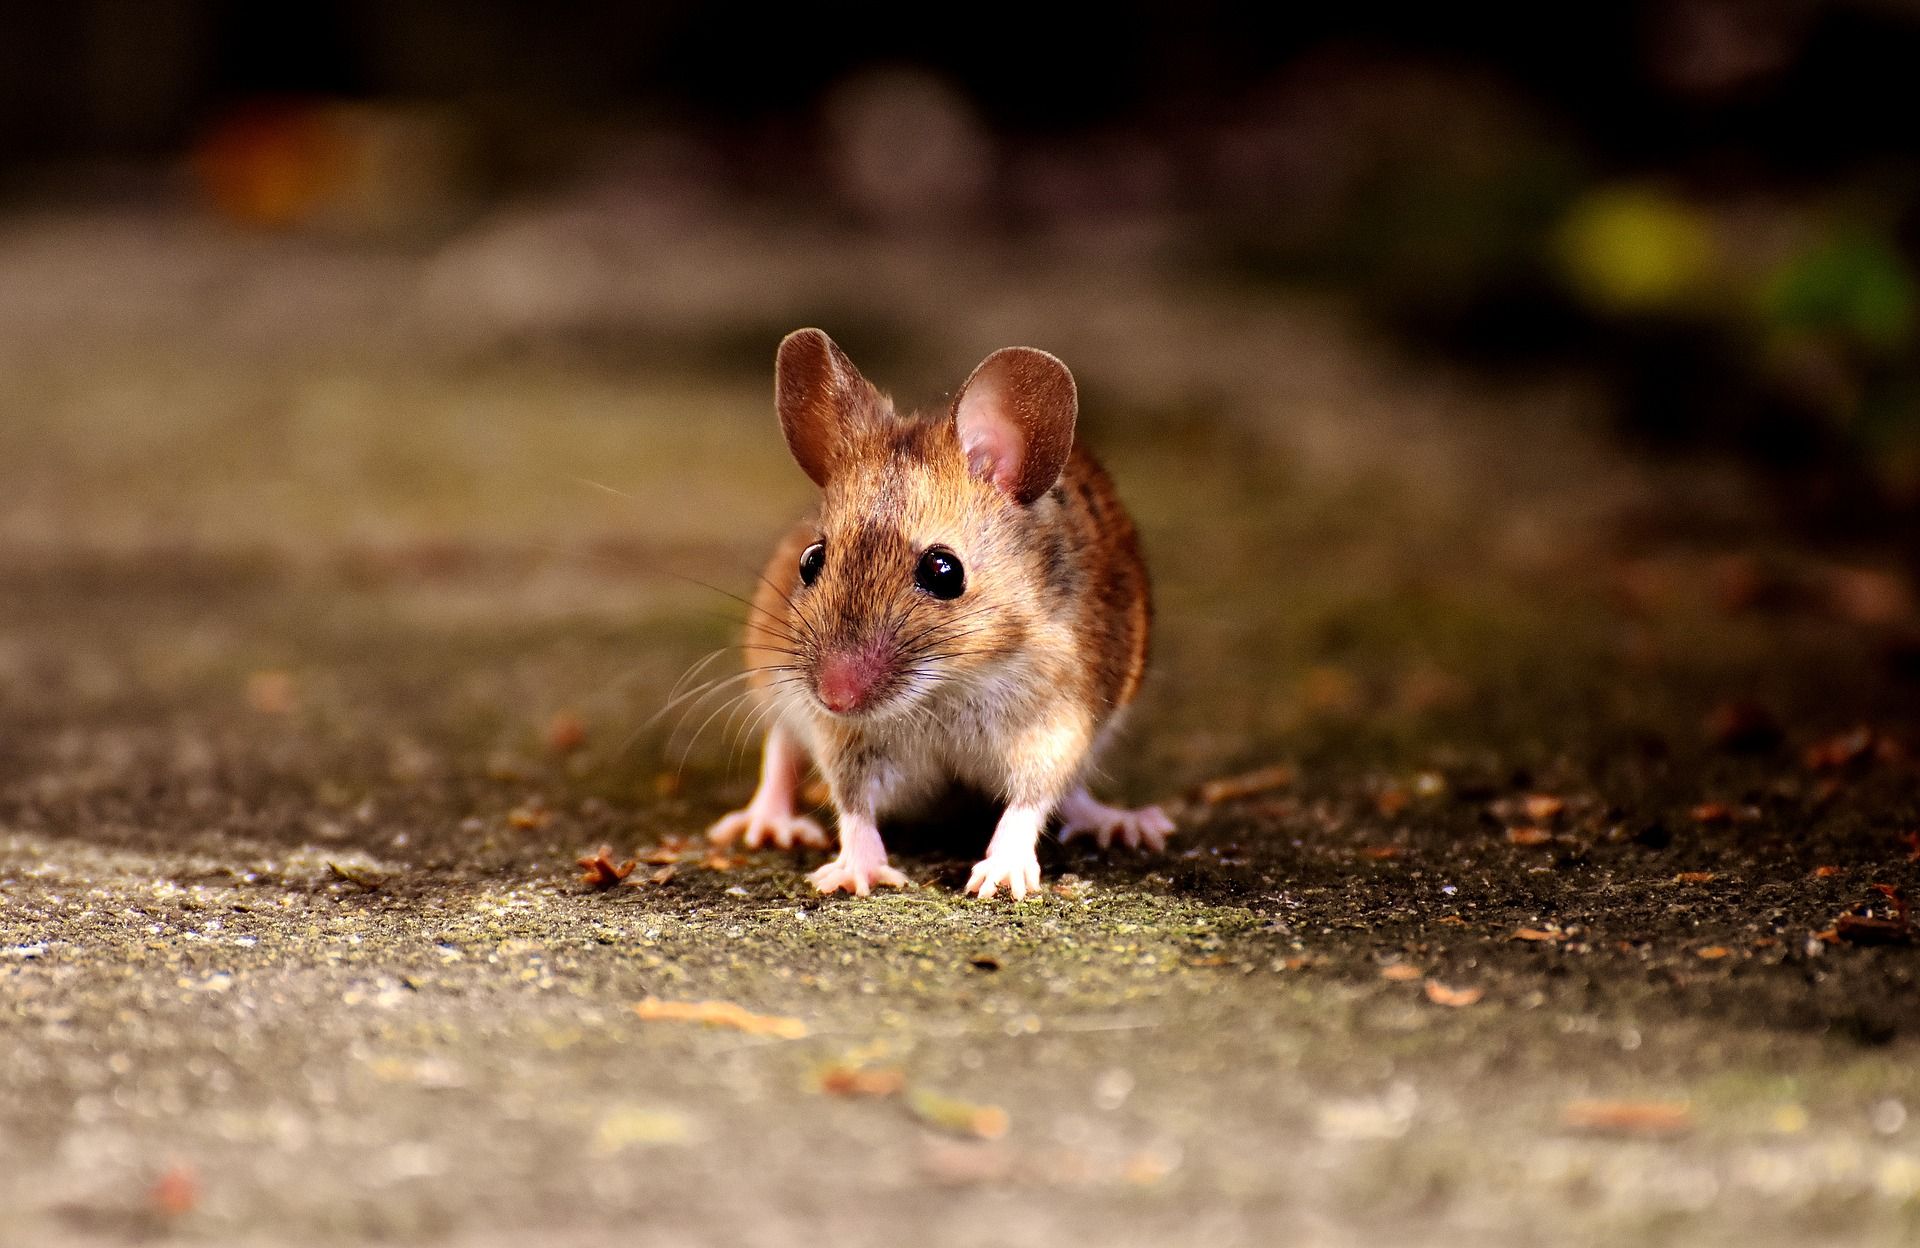 ДНК мыши хотят сделать ключом для криптовалютного кошелька